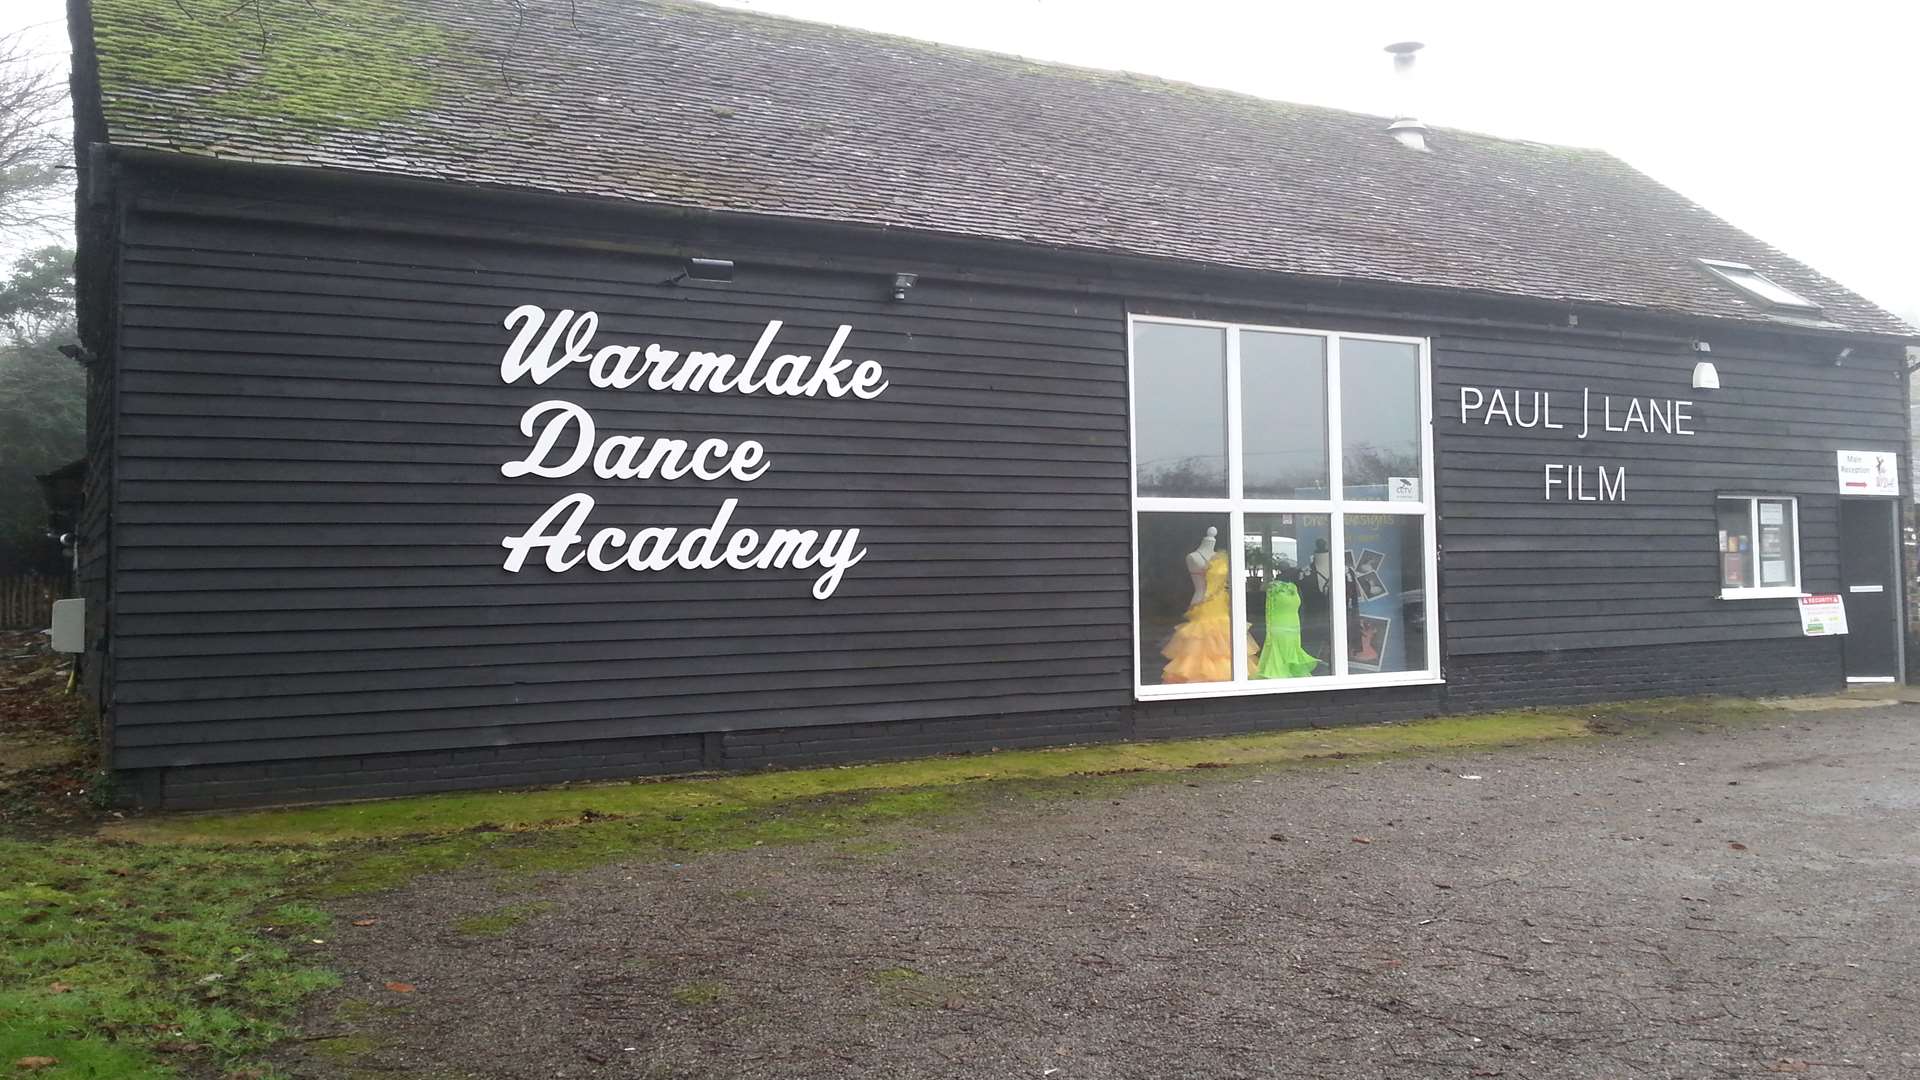 The Warmlake Dance Academy